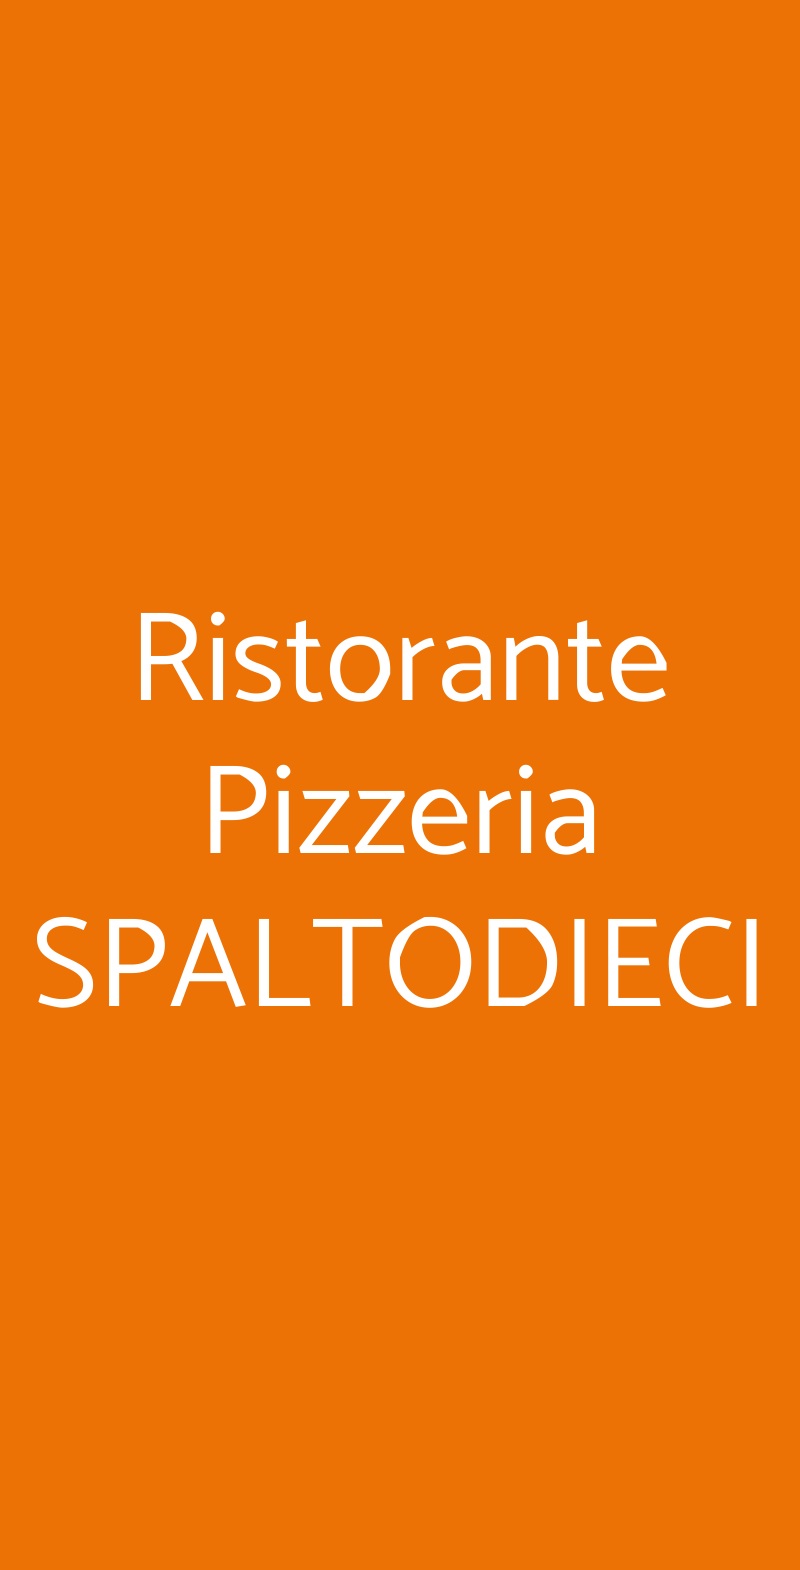 Ristorante Pizzeria SPALTODIECI Monza menù 1 pagina